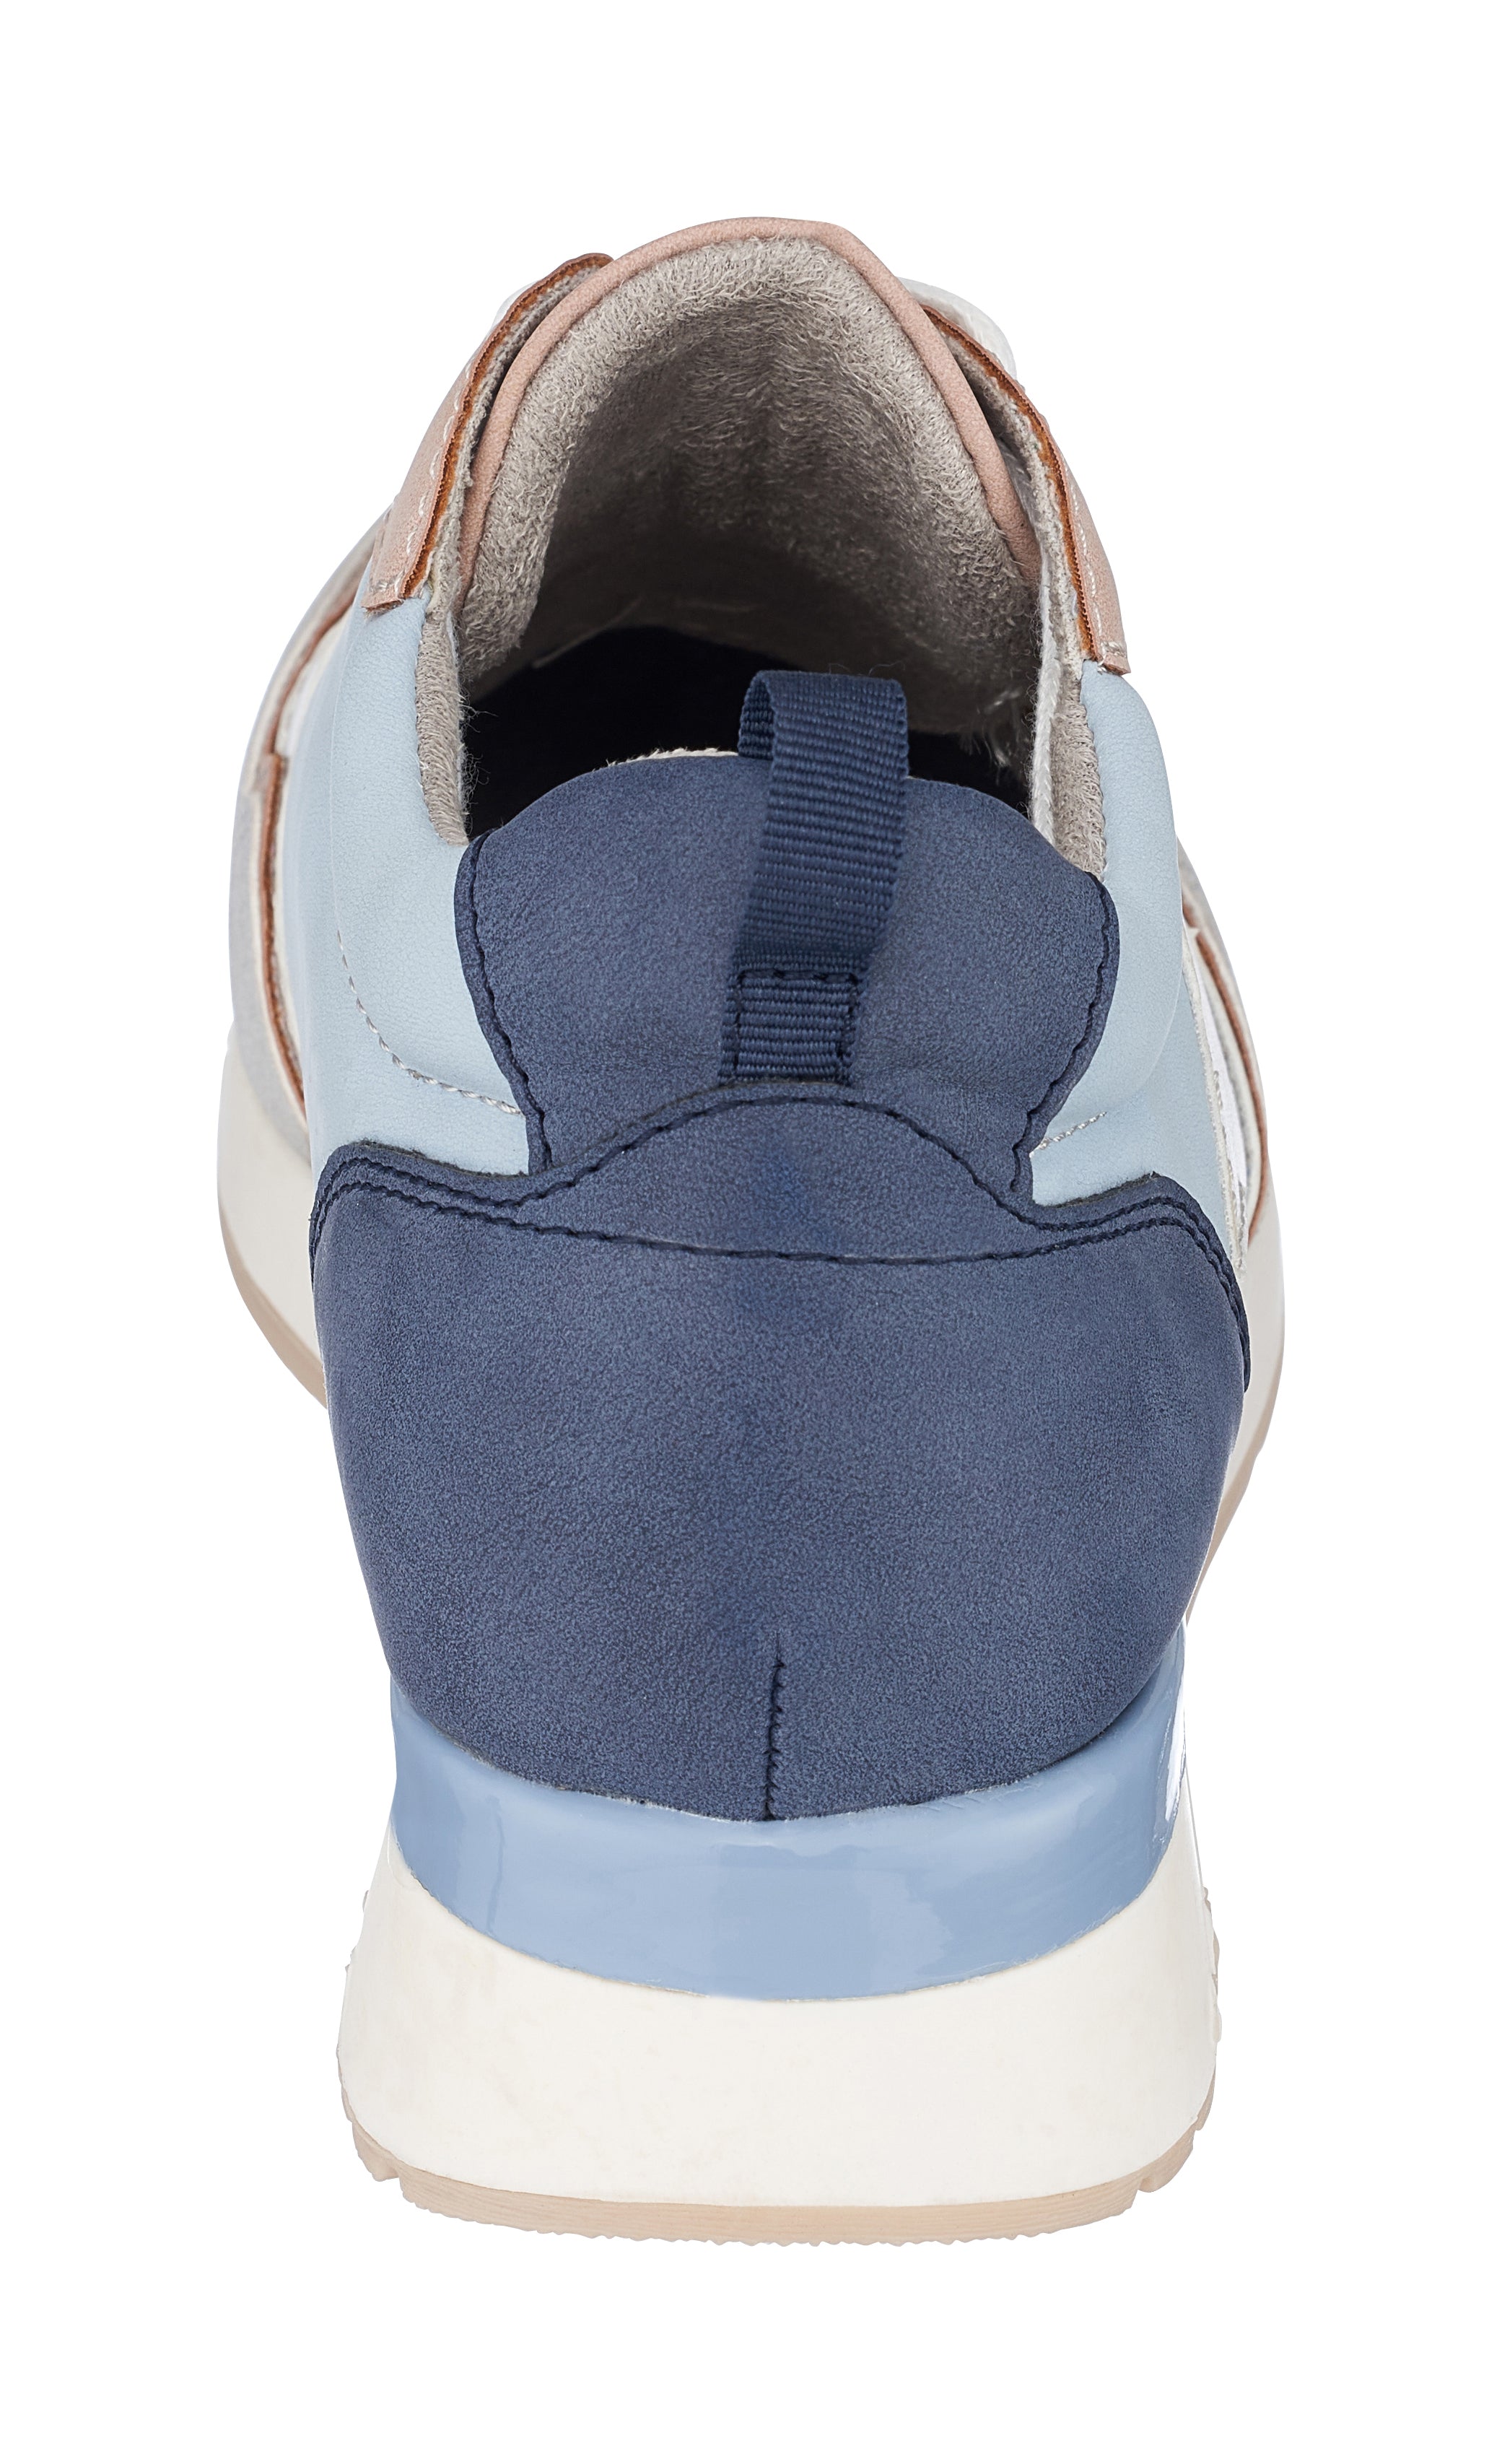 Buy Woodland Men's Grey Sneaker (GC 3885121C) at Amazon.in